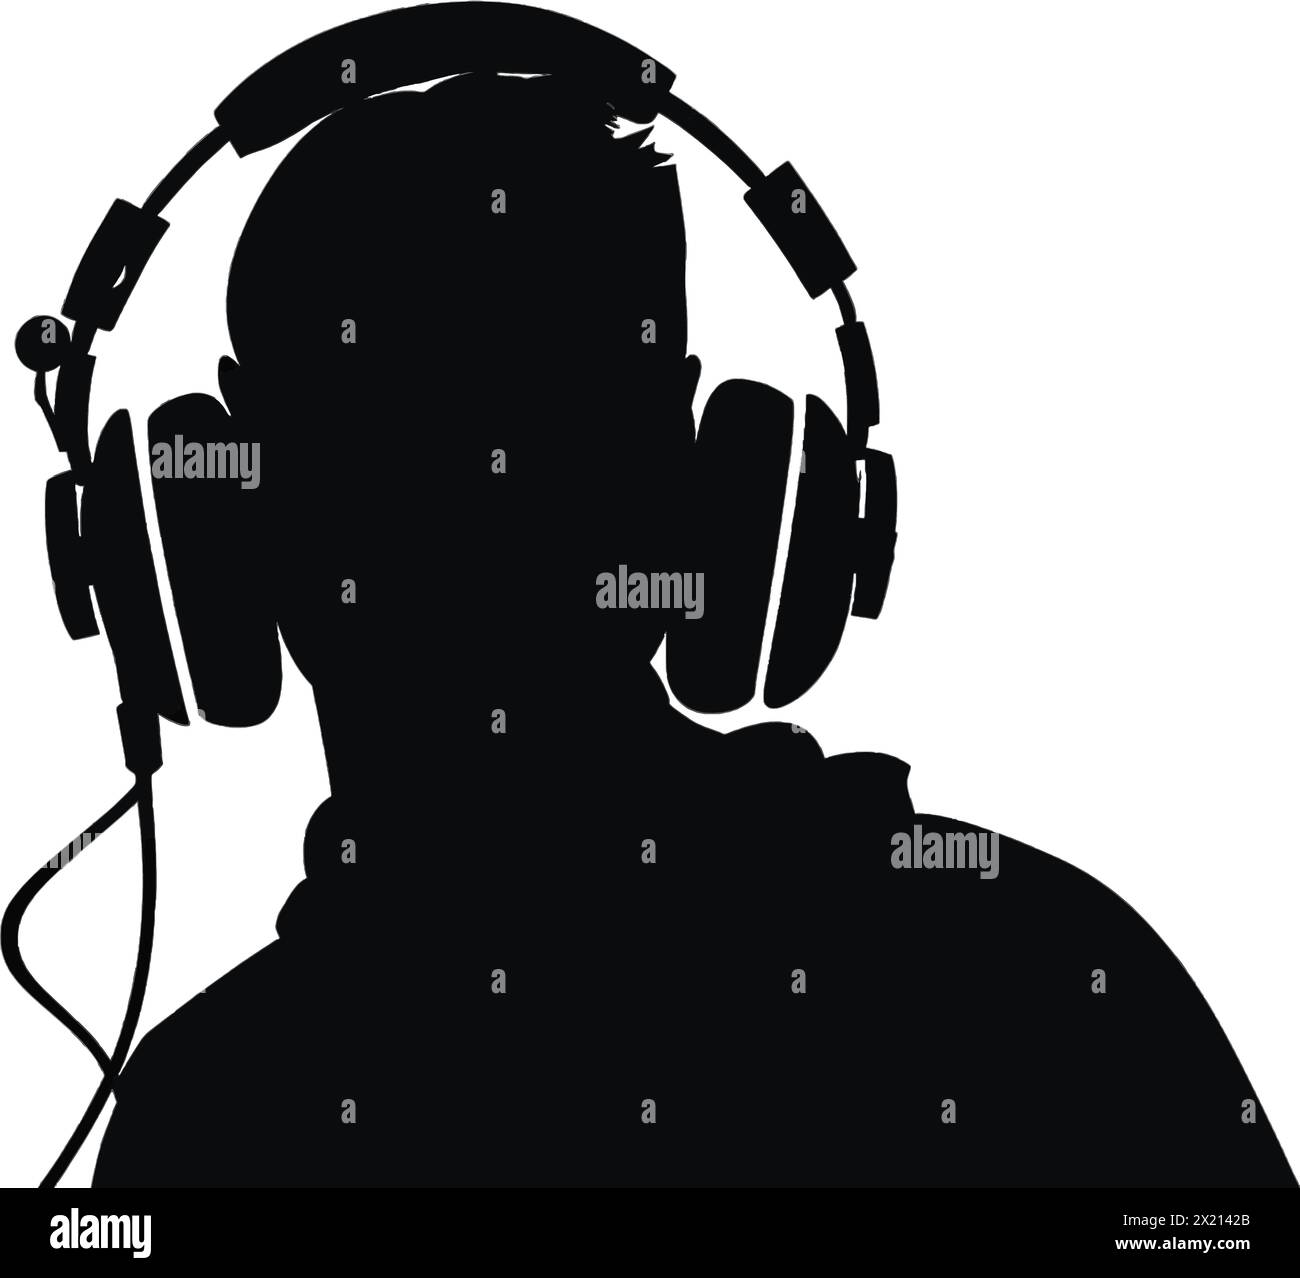 Illustration vectorielle d'un homme dans des écouteurs en silhouette noire sur un fond blanc propre, capturant des formes gracieuses de ce vecteur. Illustration de Vecteur